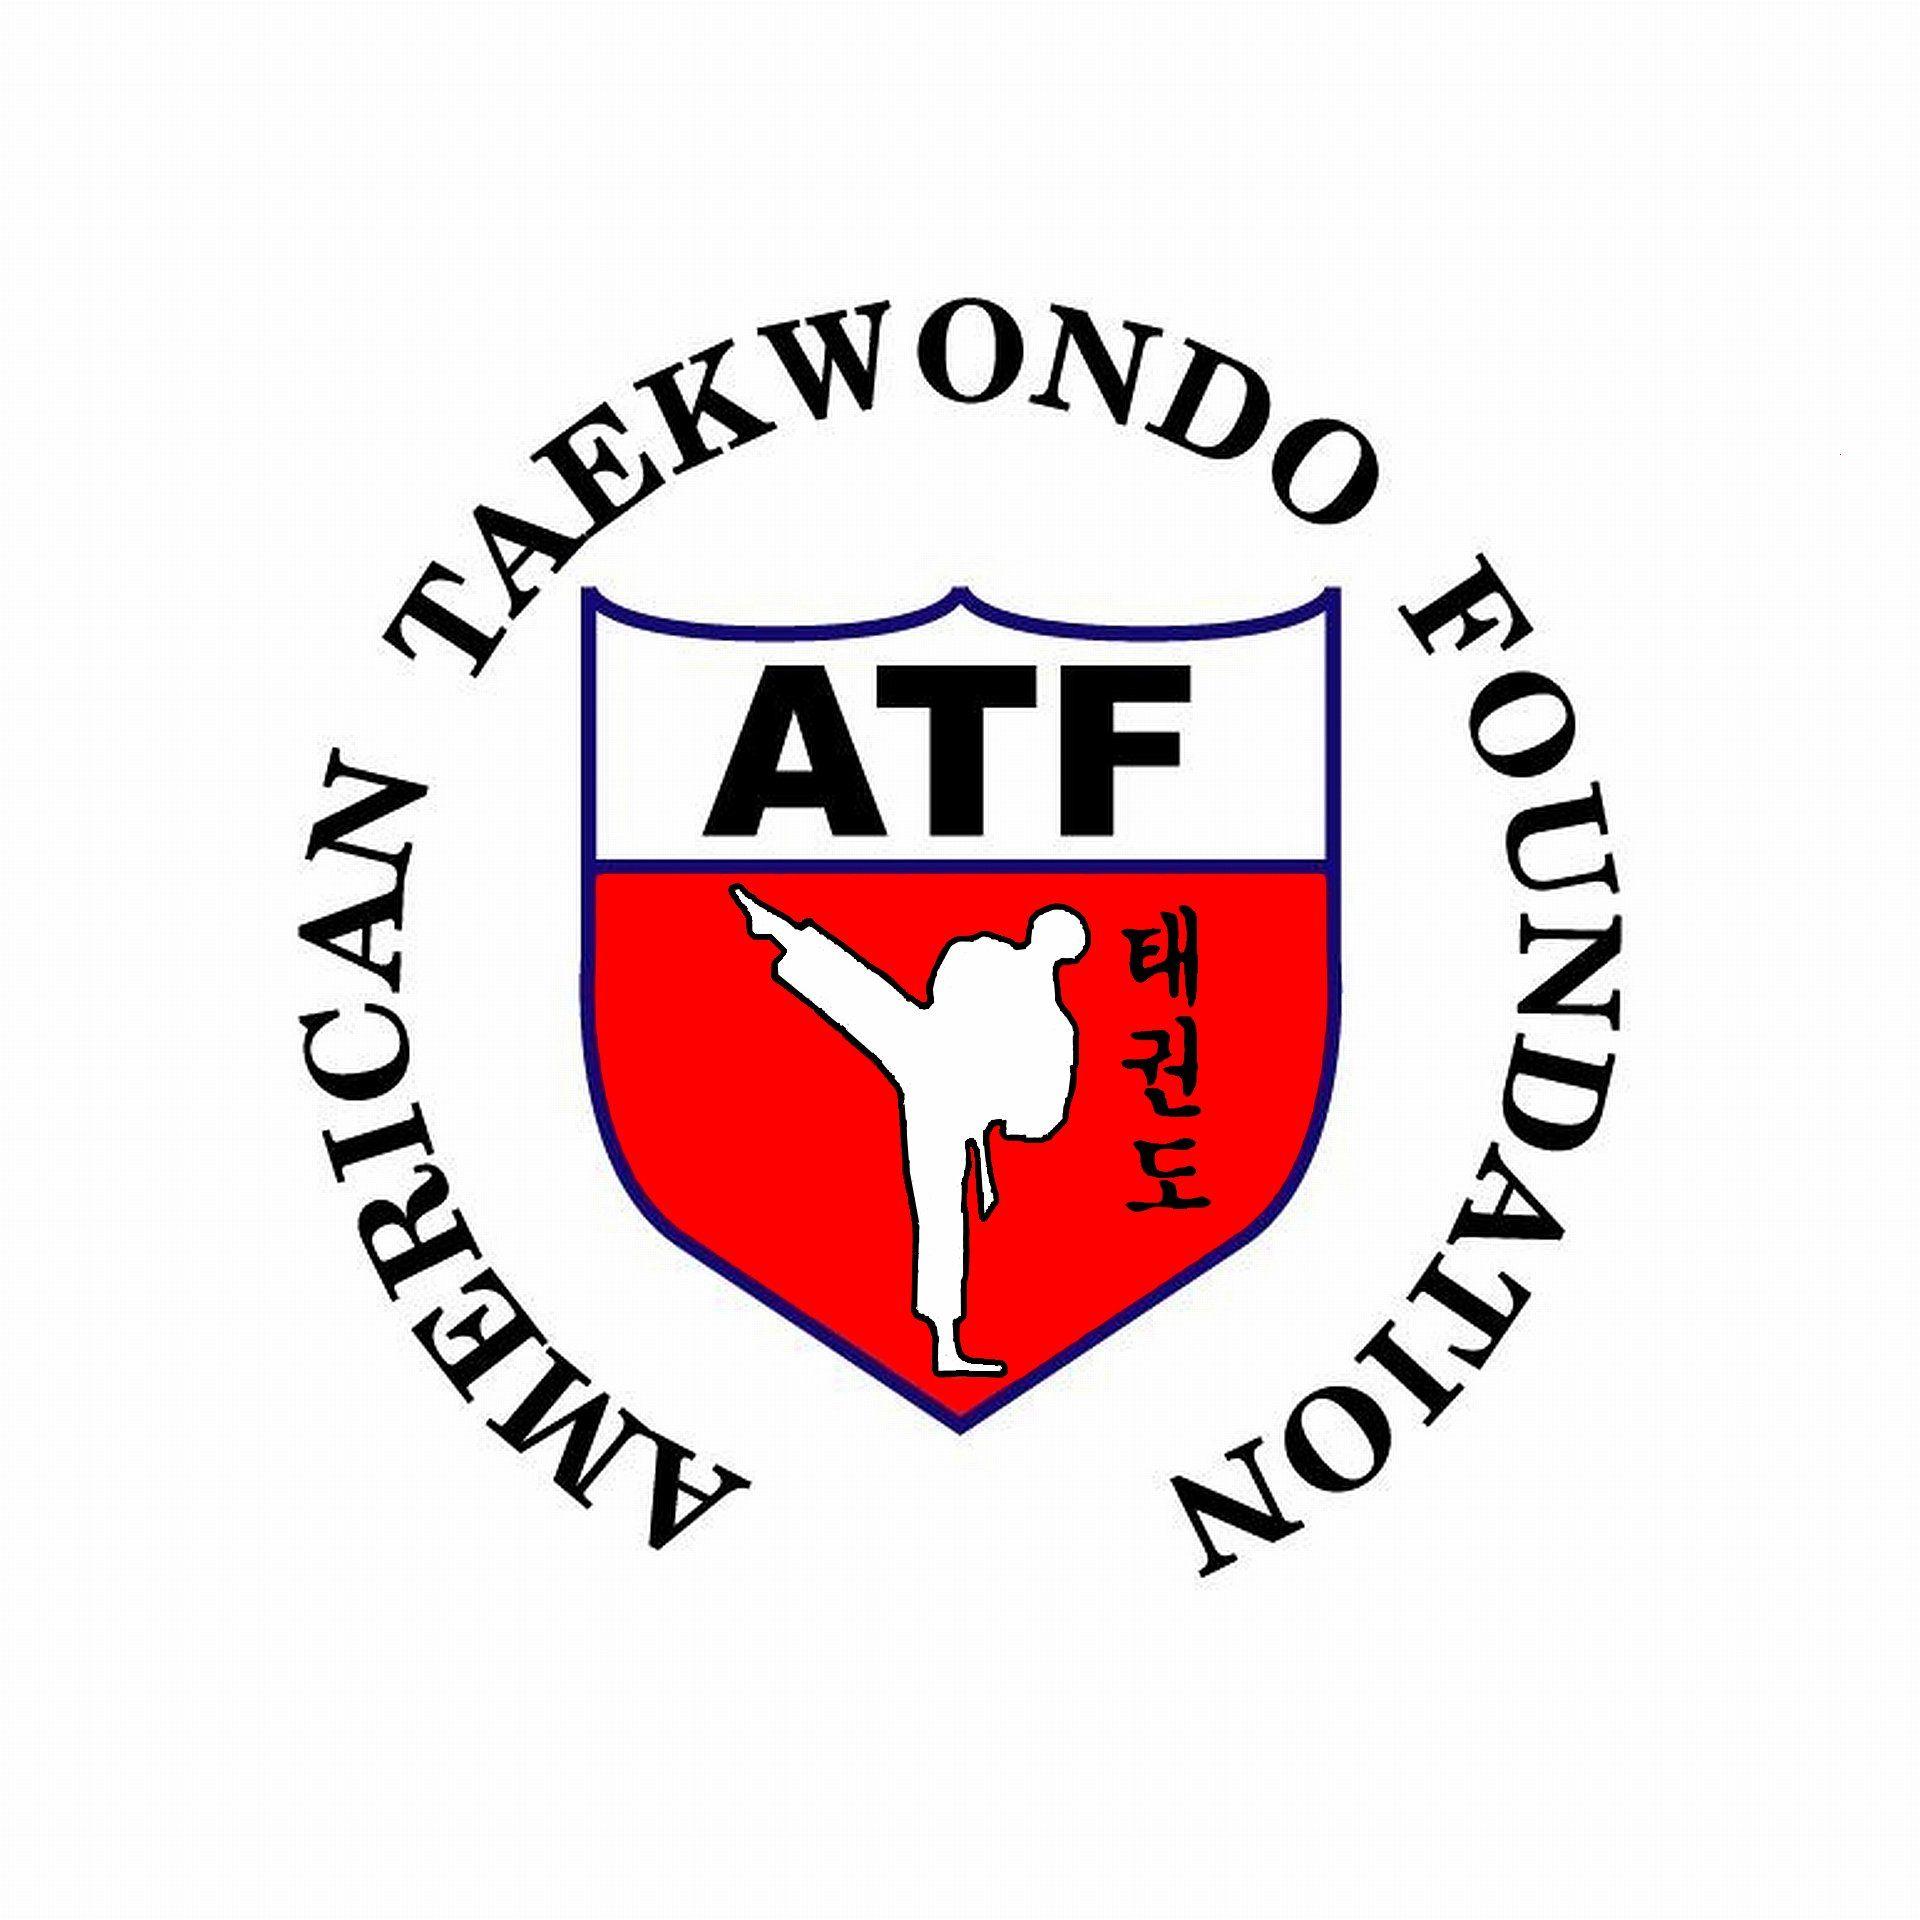 ATF Logo - ATF Logos